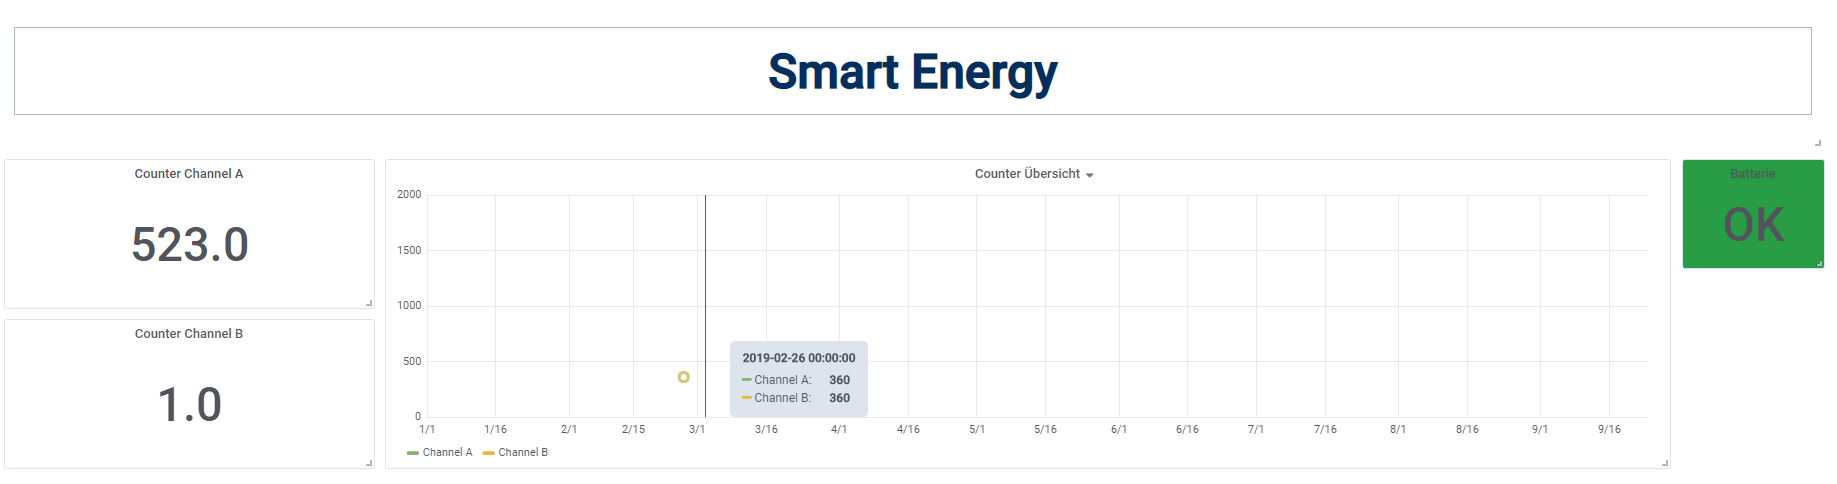 Smart Energy Dashboard